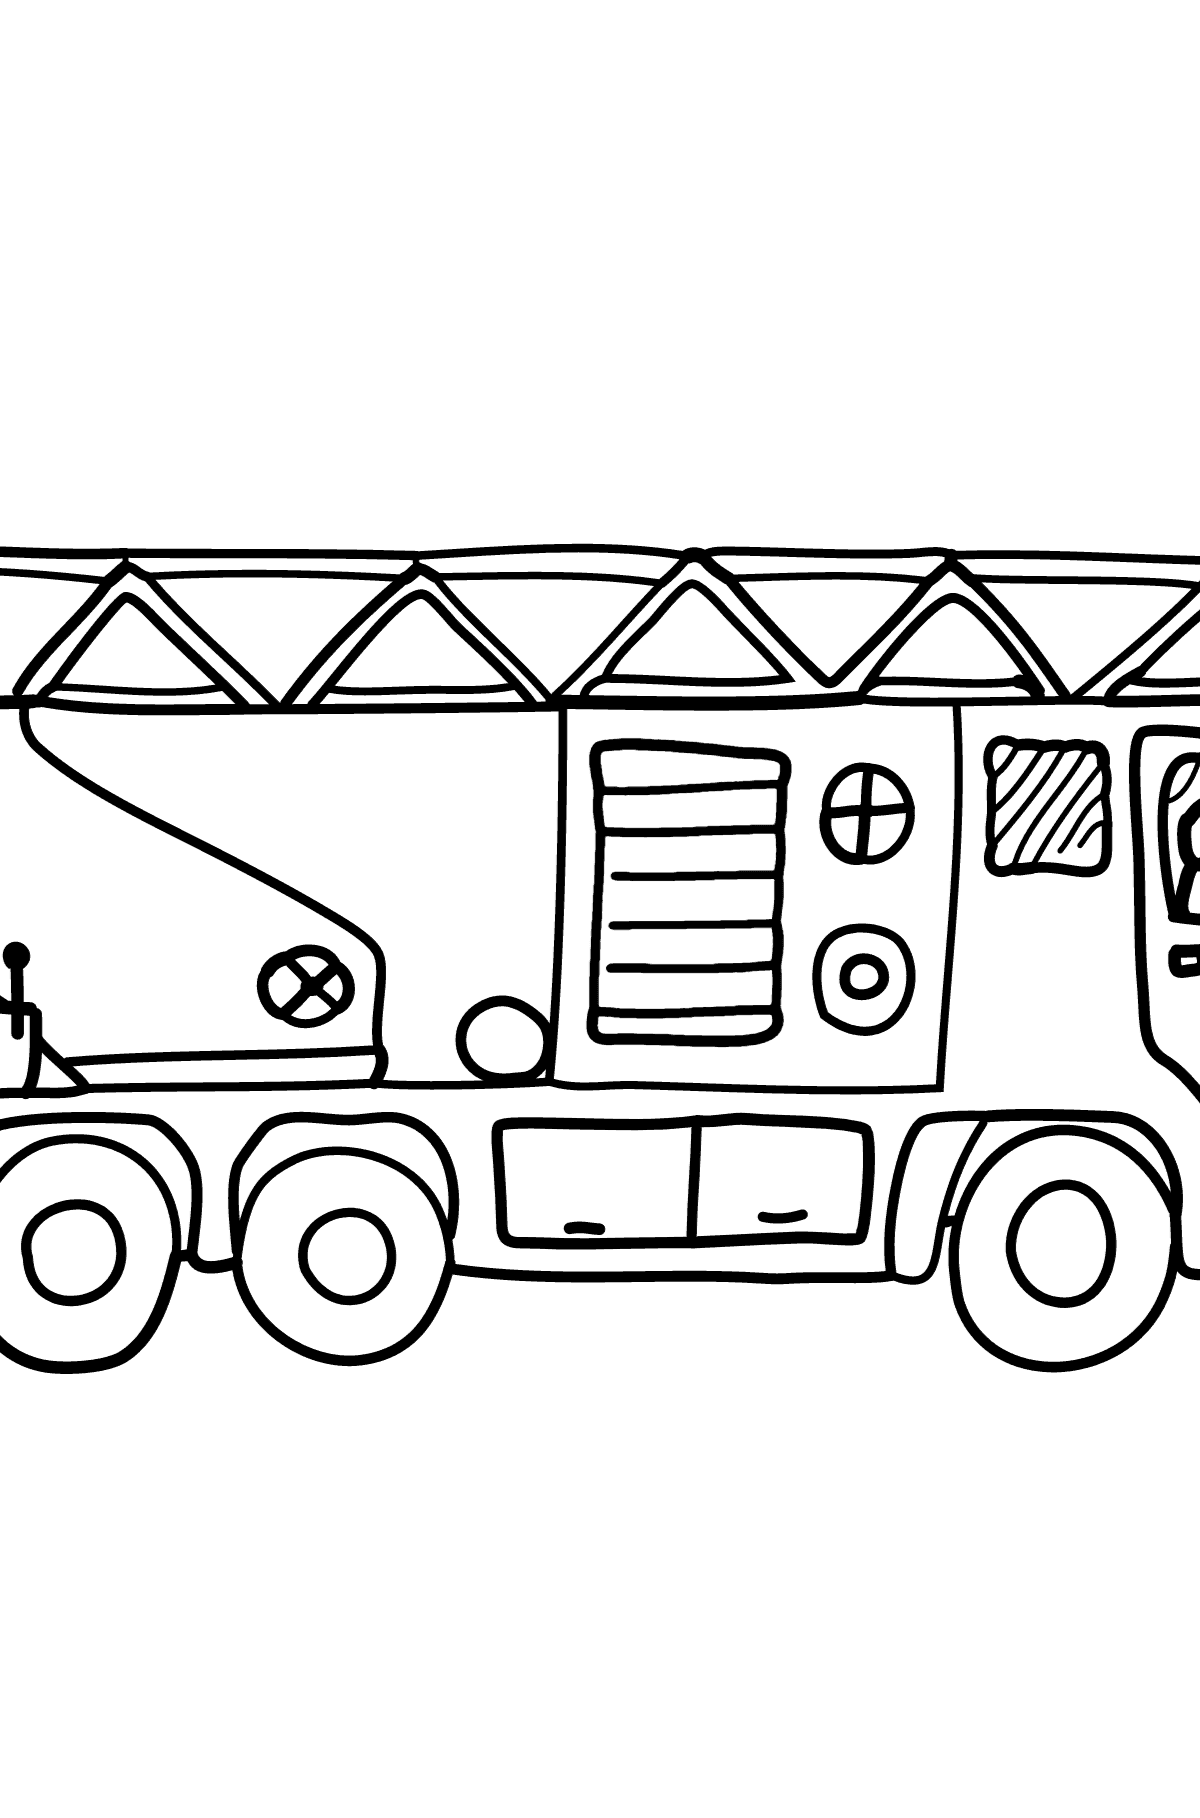 Tegning til fargelegging brannbil - Tegninger til fargelegging for barn